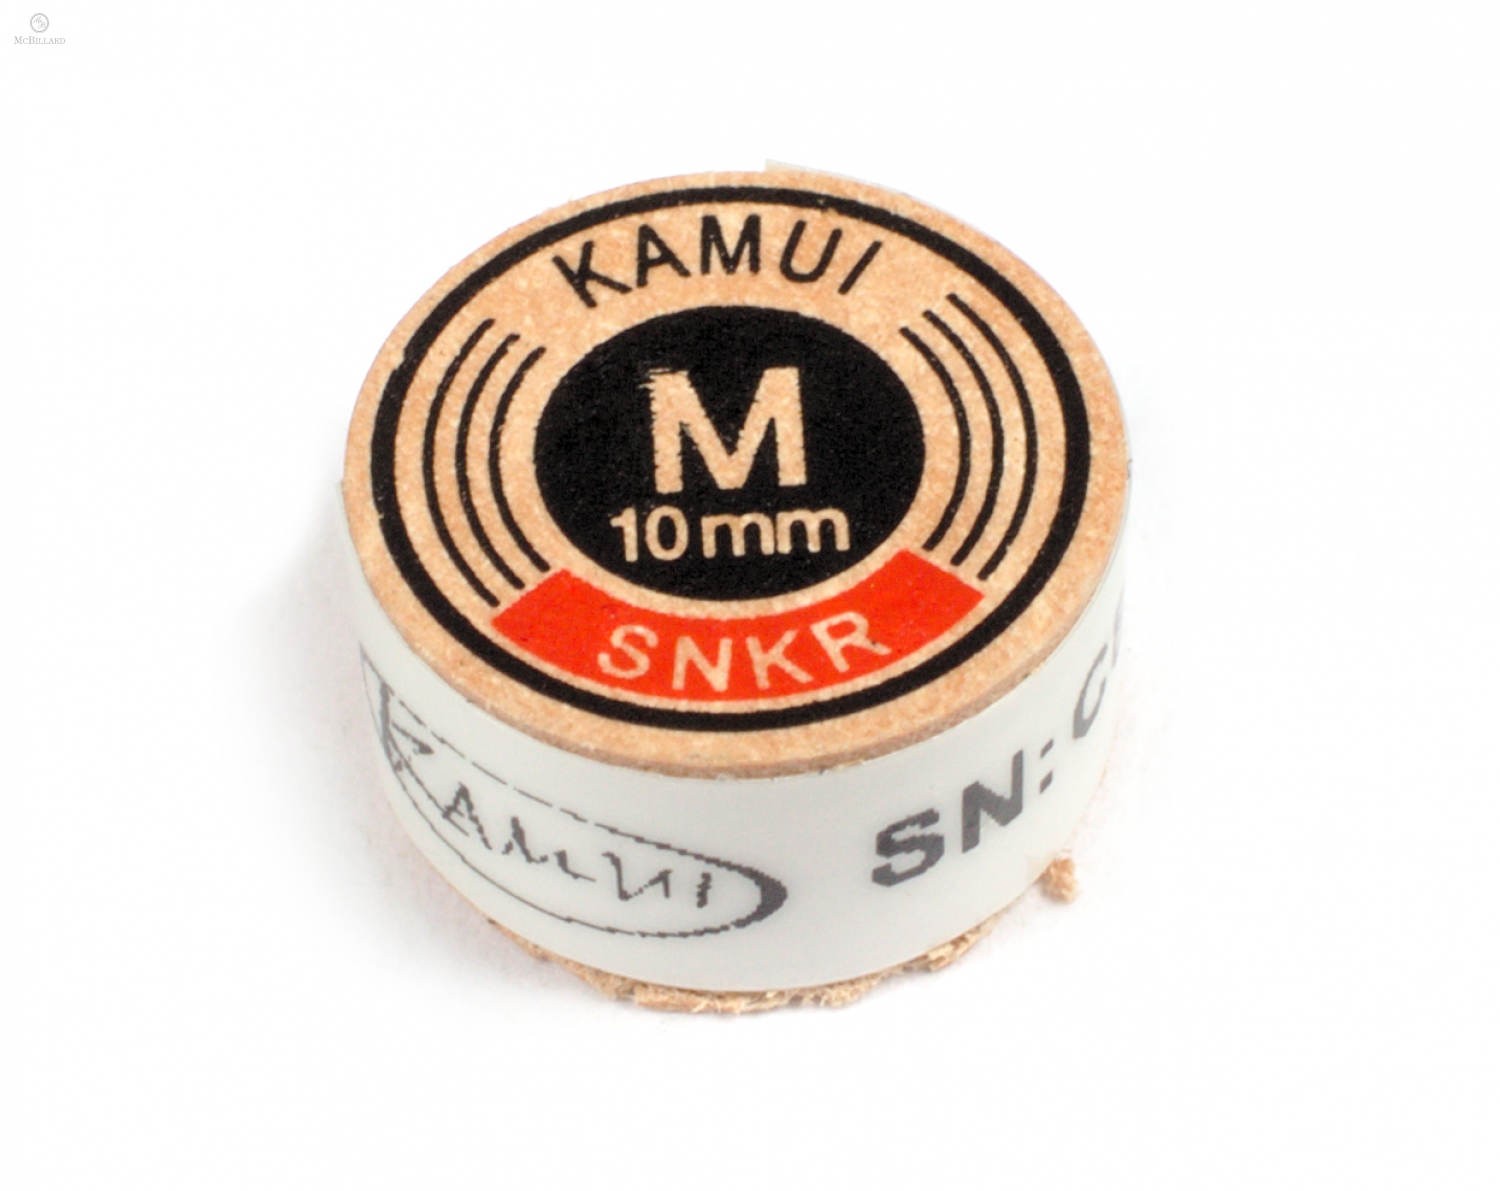 Cue Tip Kamui Multilayer - Original - M - 10 mm, 1 piece